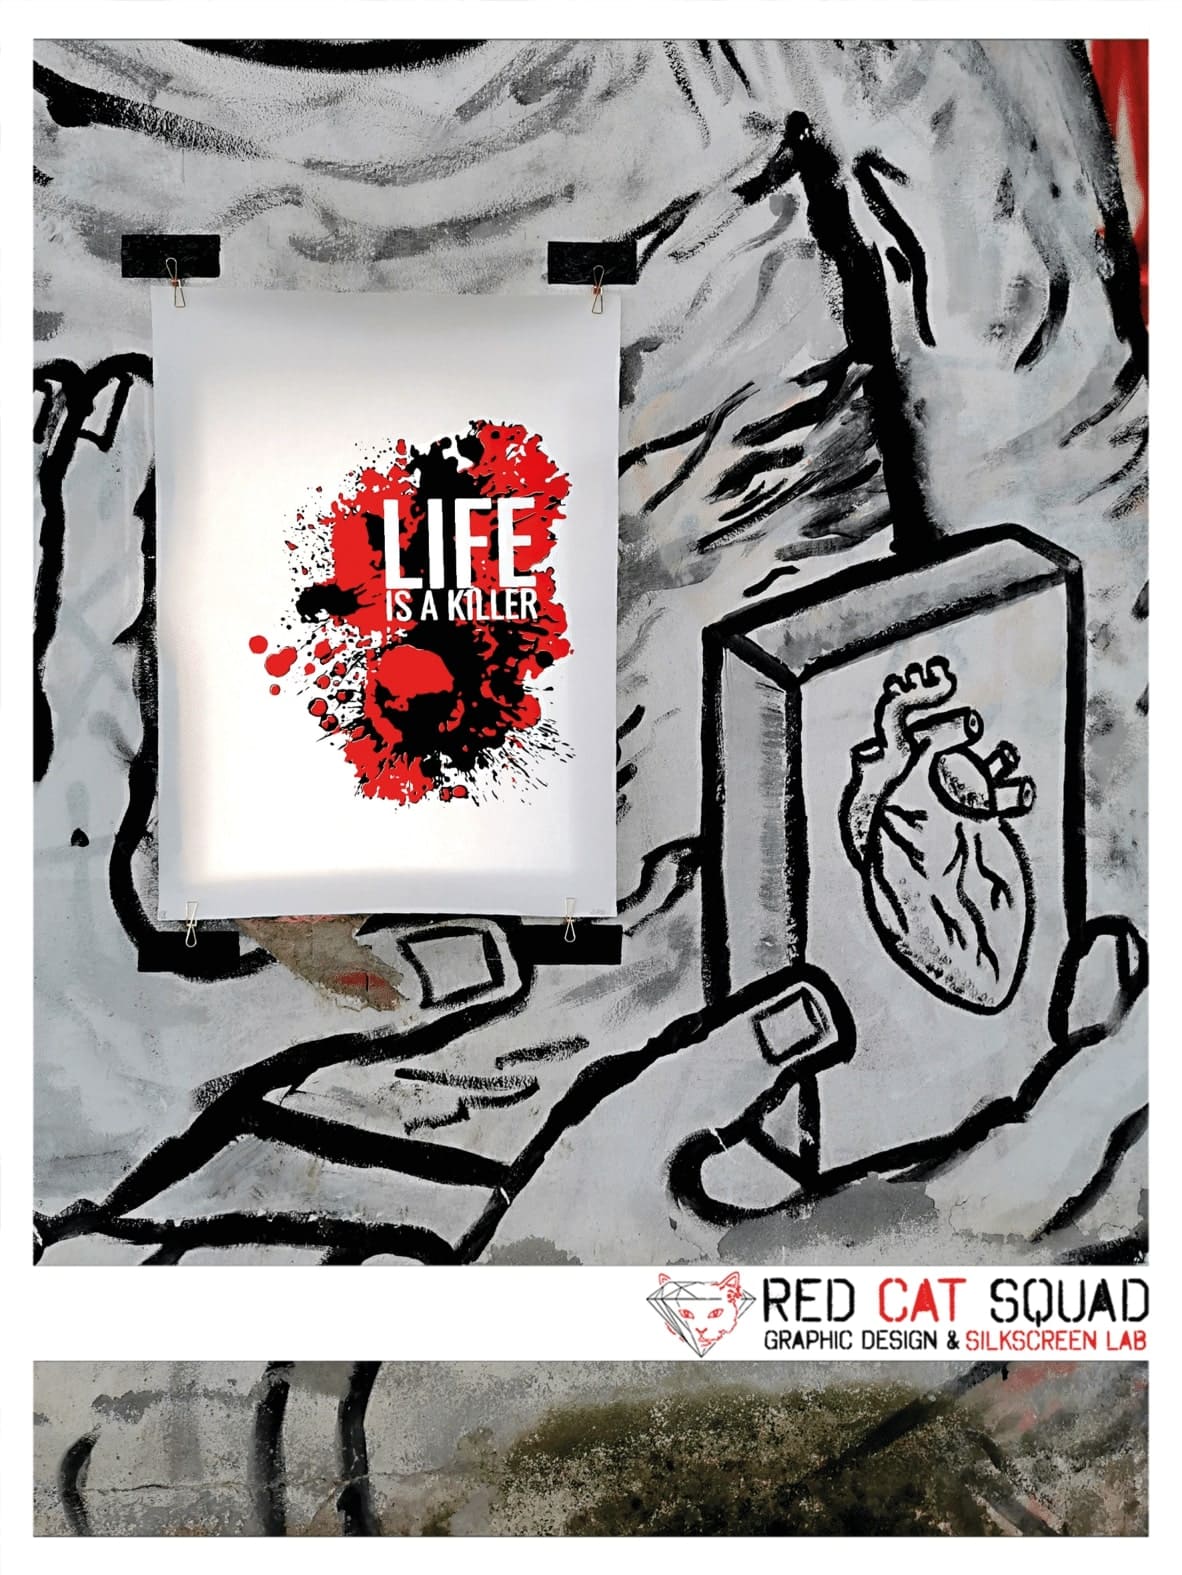 RED CAT SQUAD BSP 06 life ARTPRINT POSTER 1